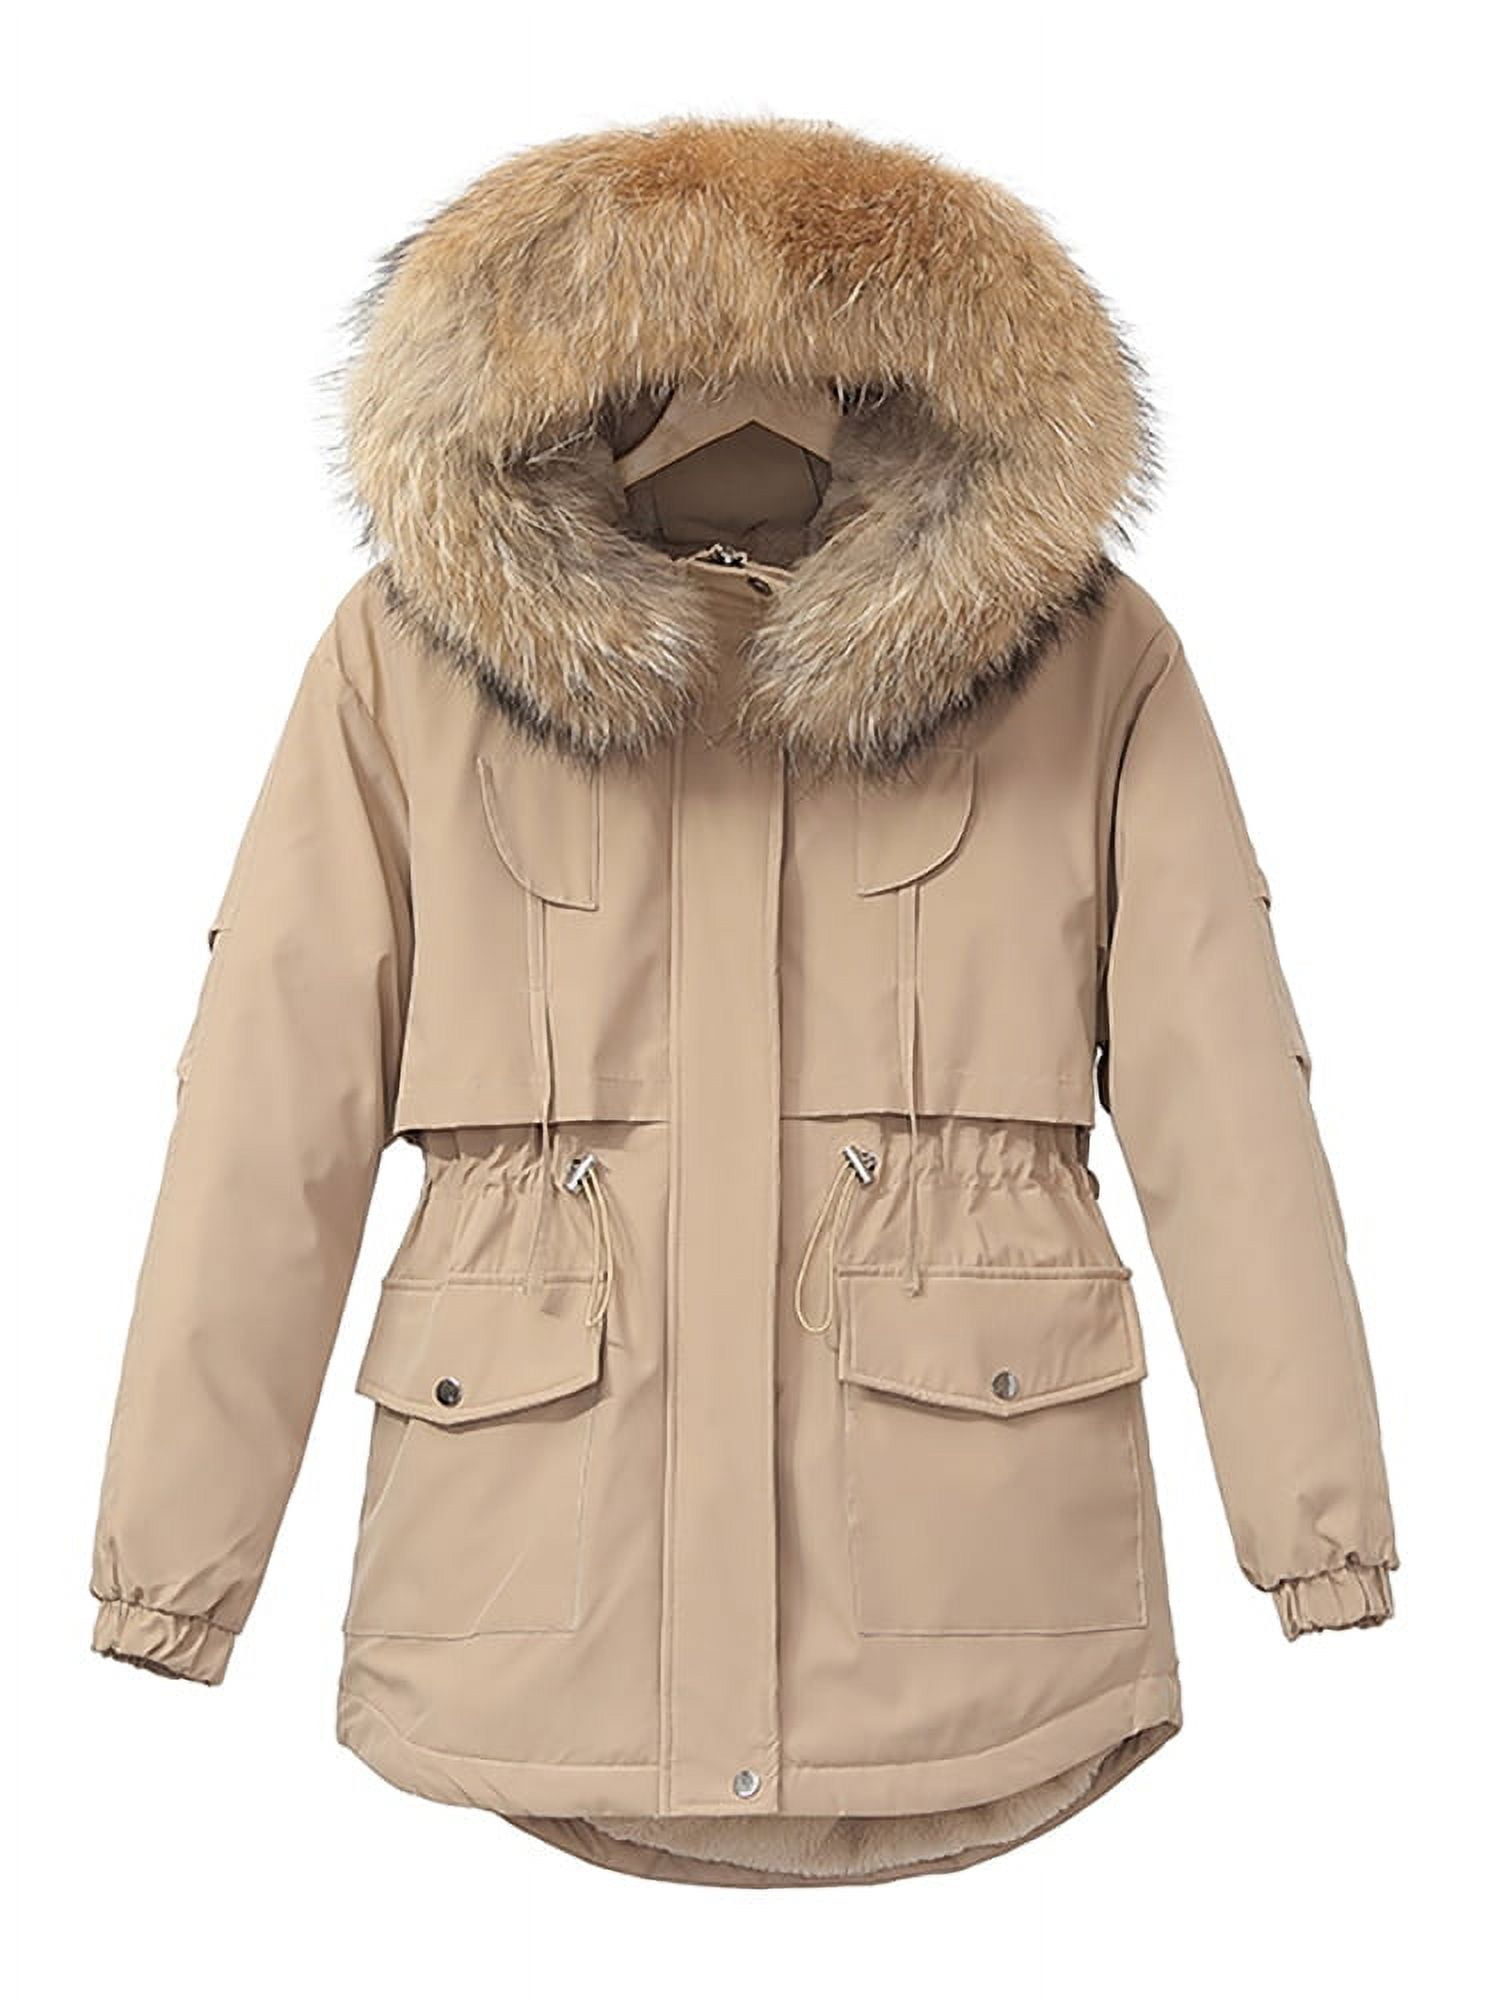 Parka Jacket Women Lightweight Thick Warm Fleece Lined Hooded Winter Zip up  Coat Jacket Fashion Outerwear – Yaxa Colombia